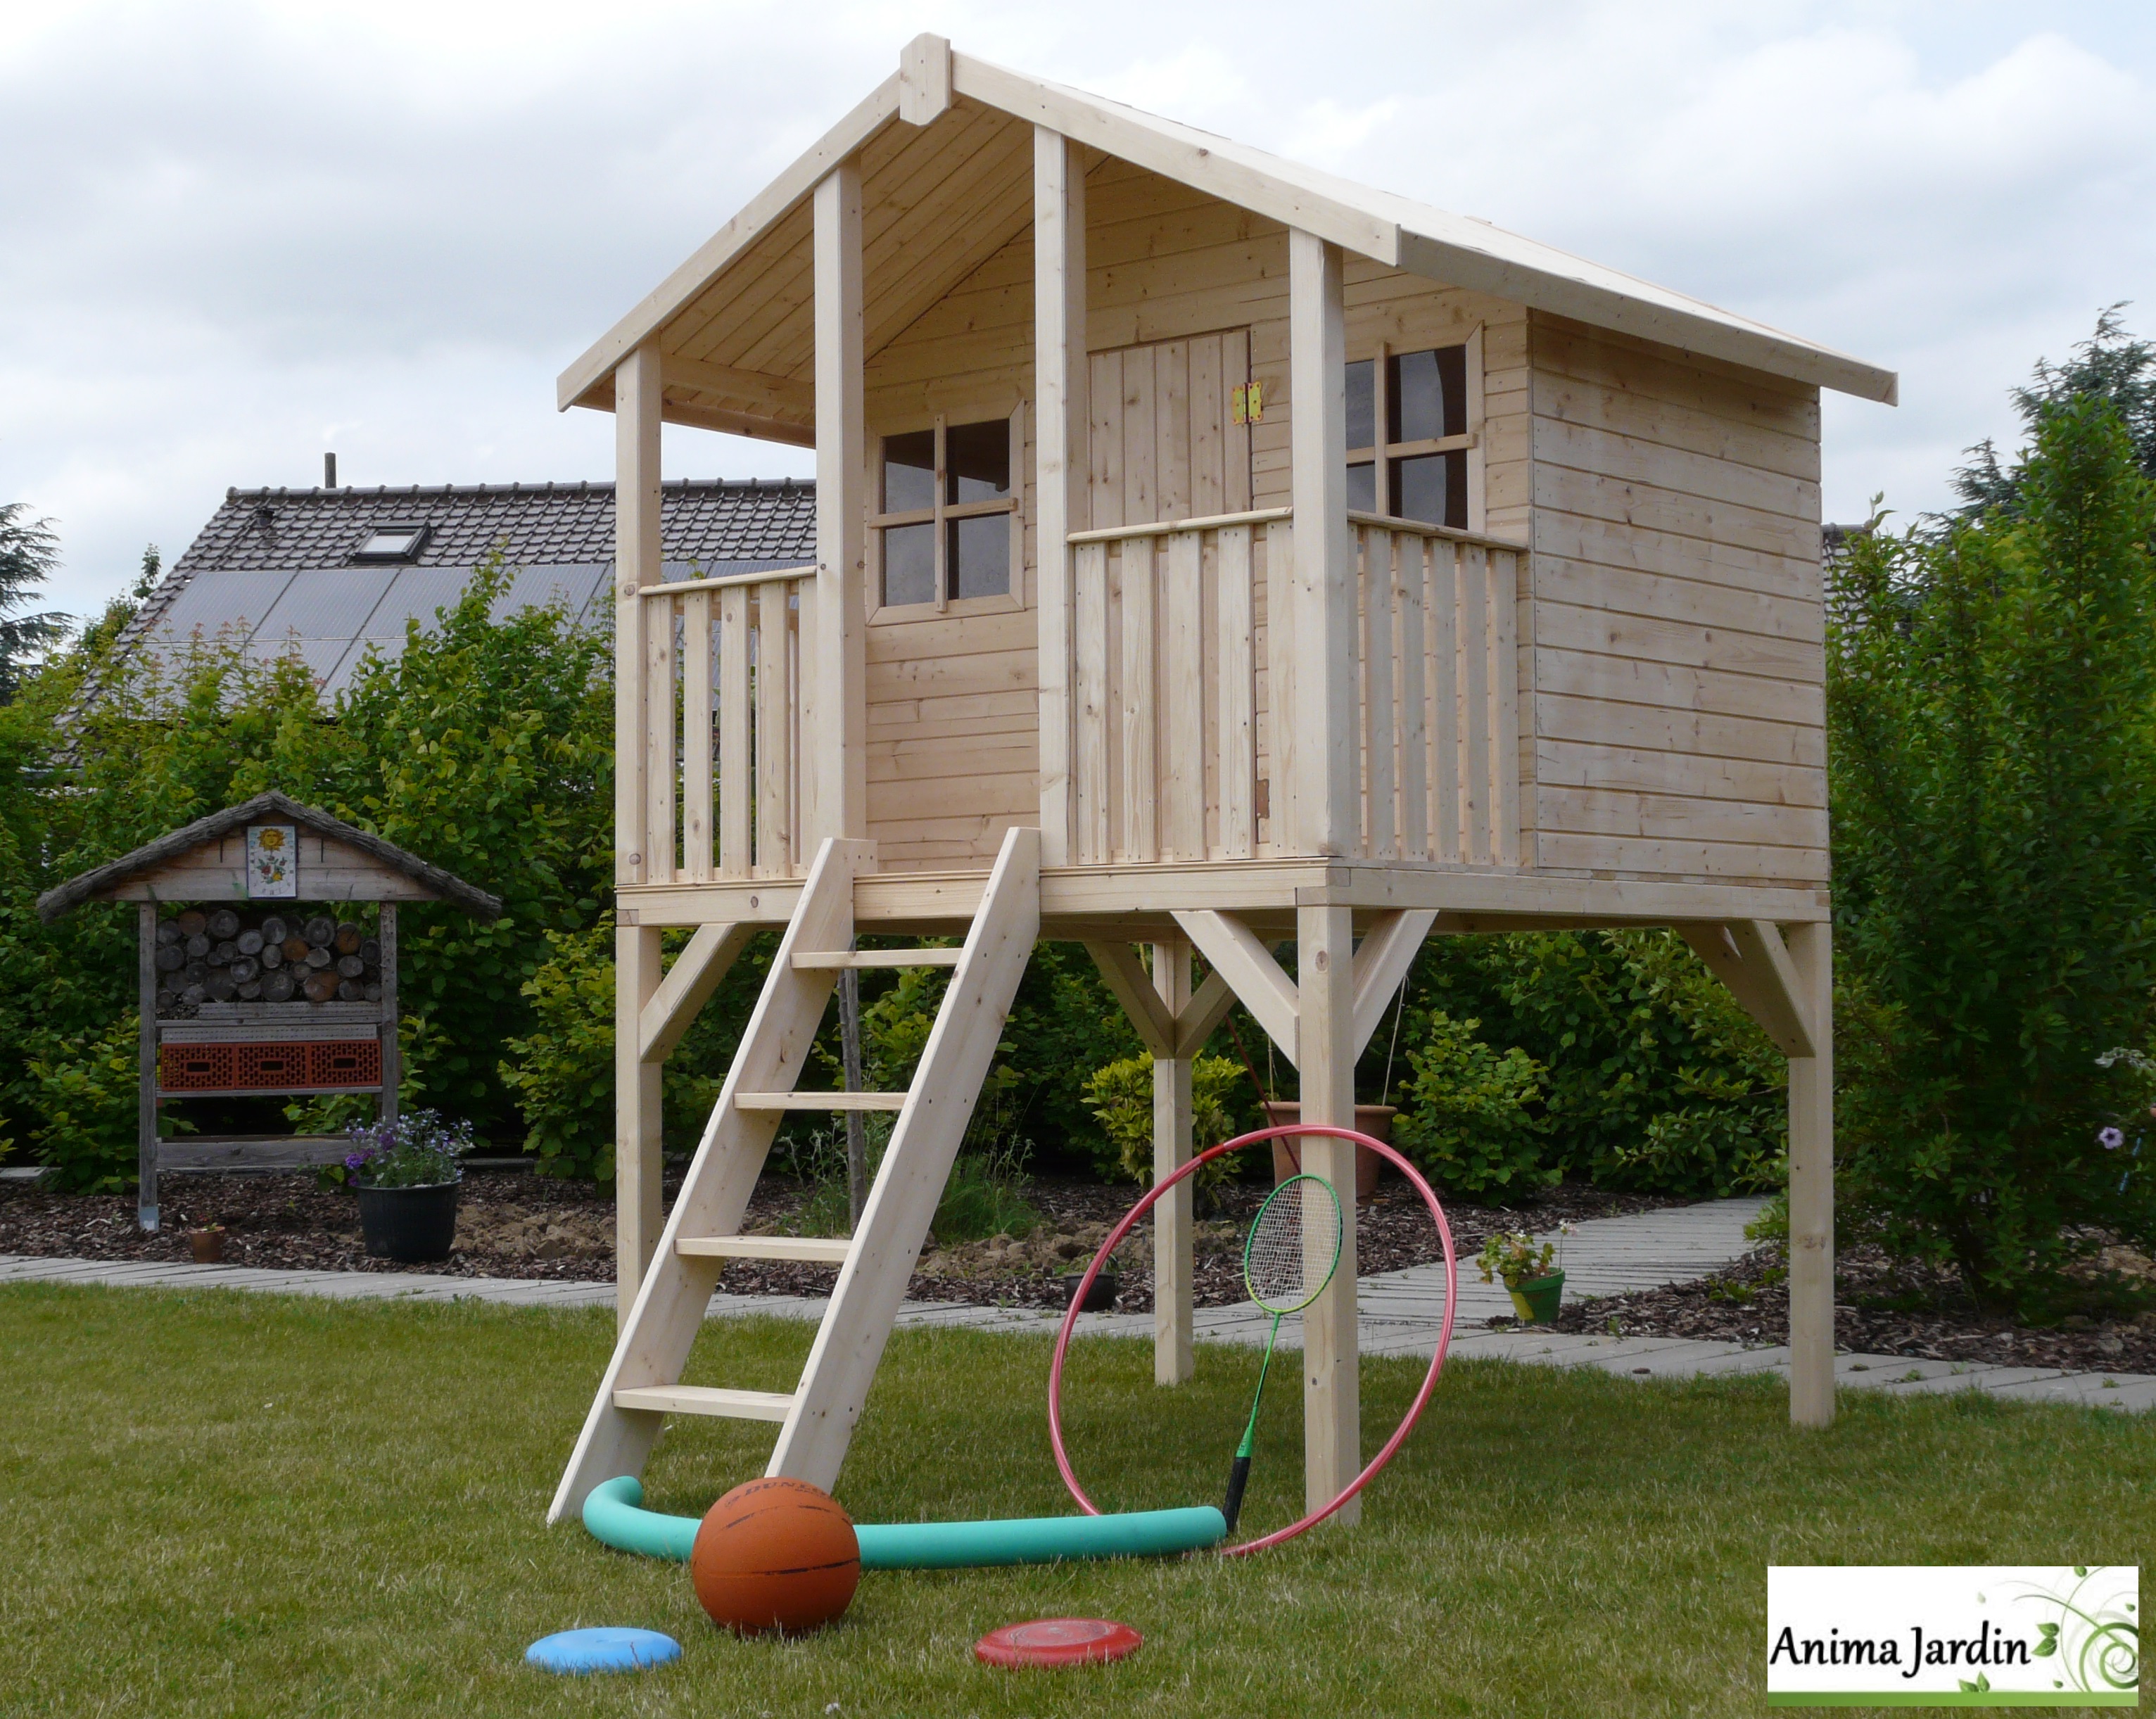 Cabane enfant - Grande cabane enfant peinte patio sur pilotis avec terrasse  - Couleur Garden